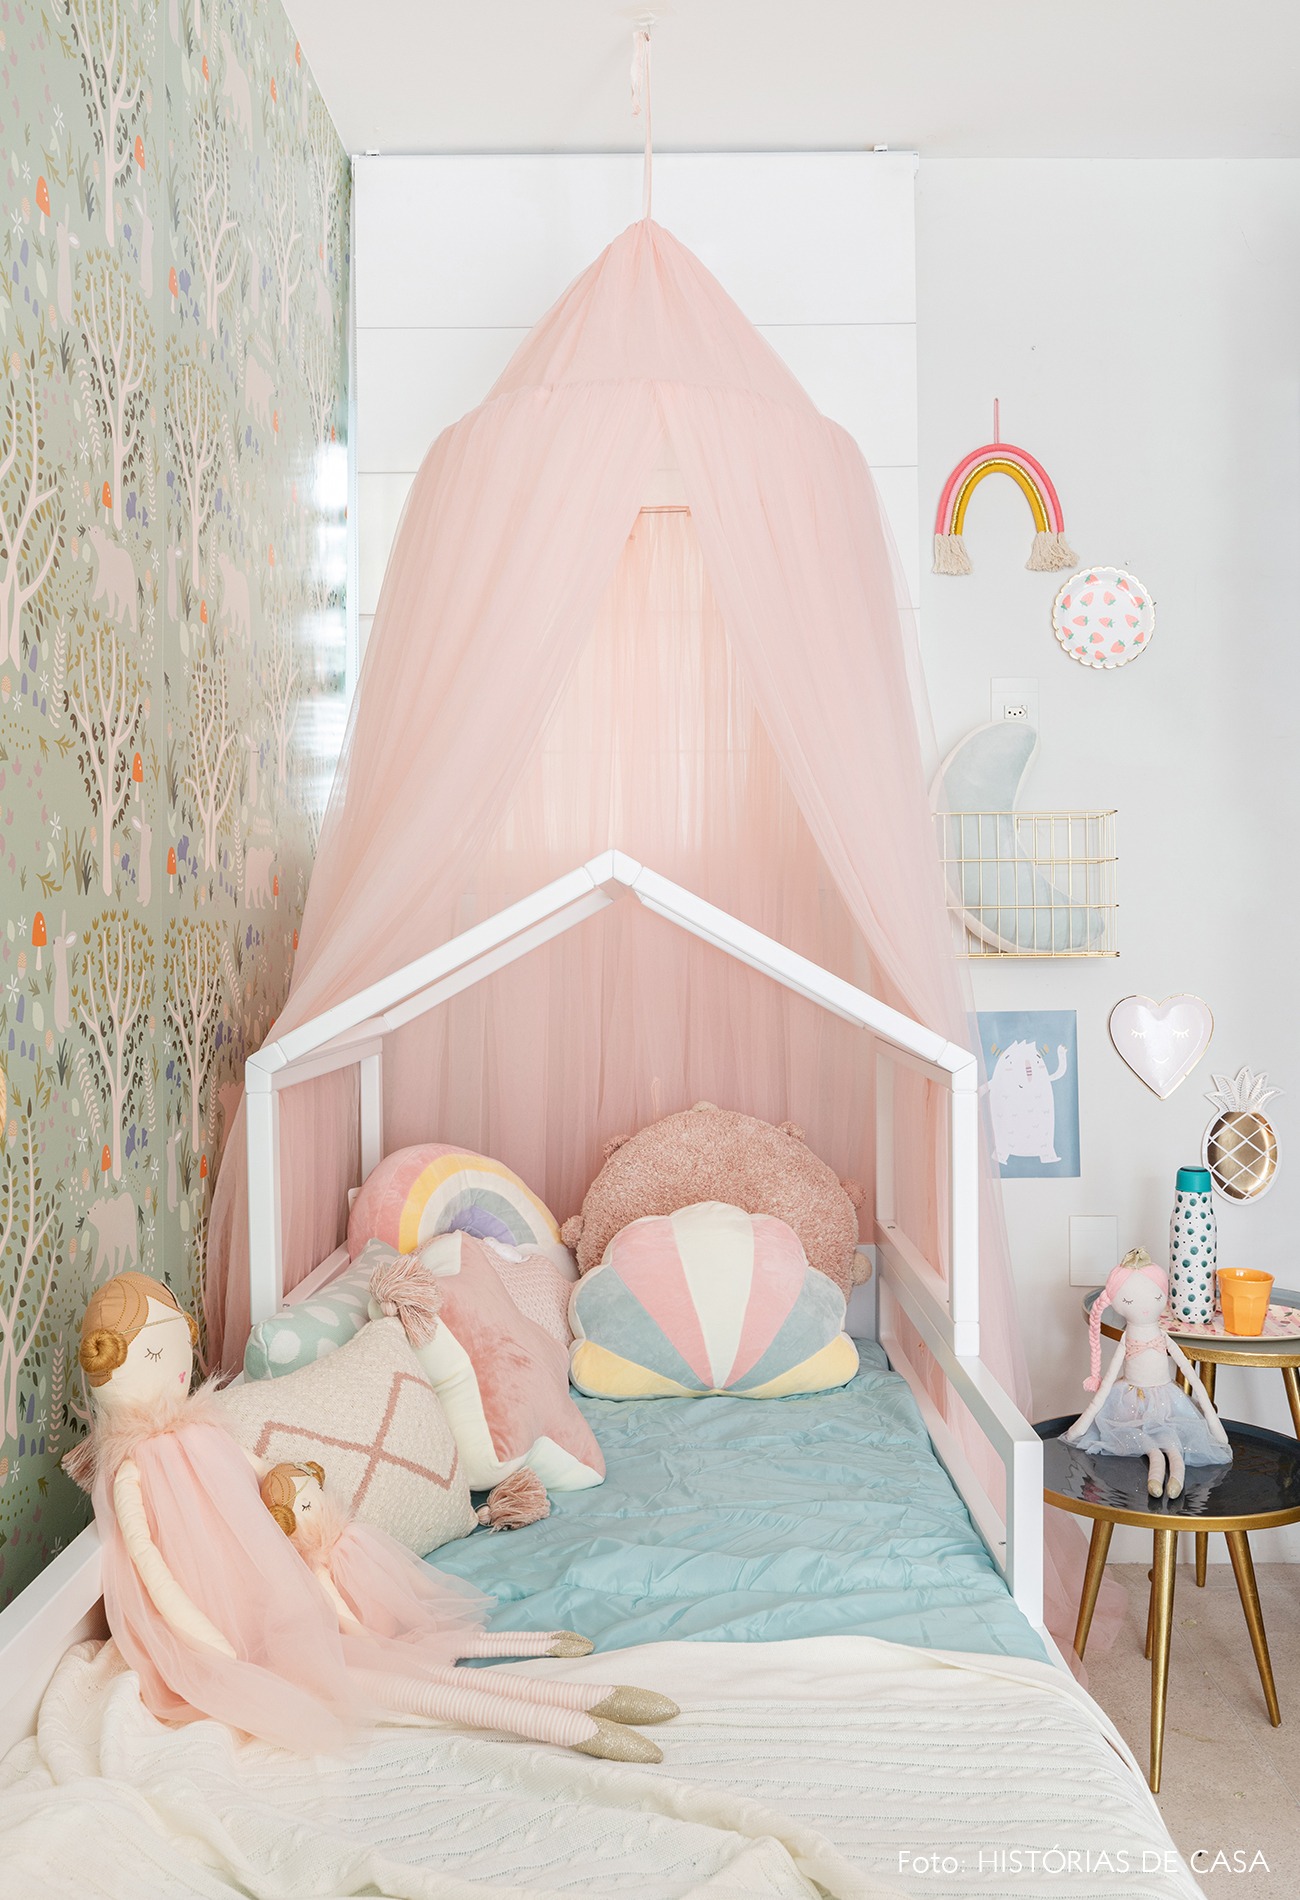 quarto infantil colorido tenda rosa tule, almofadas coloridas, papel de parede